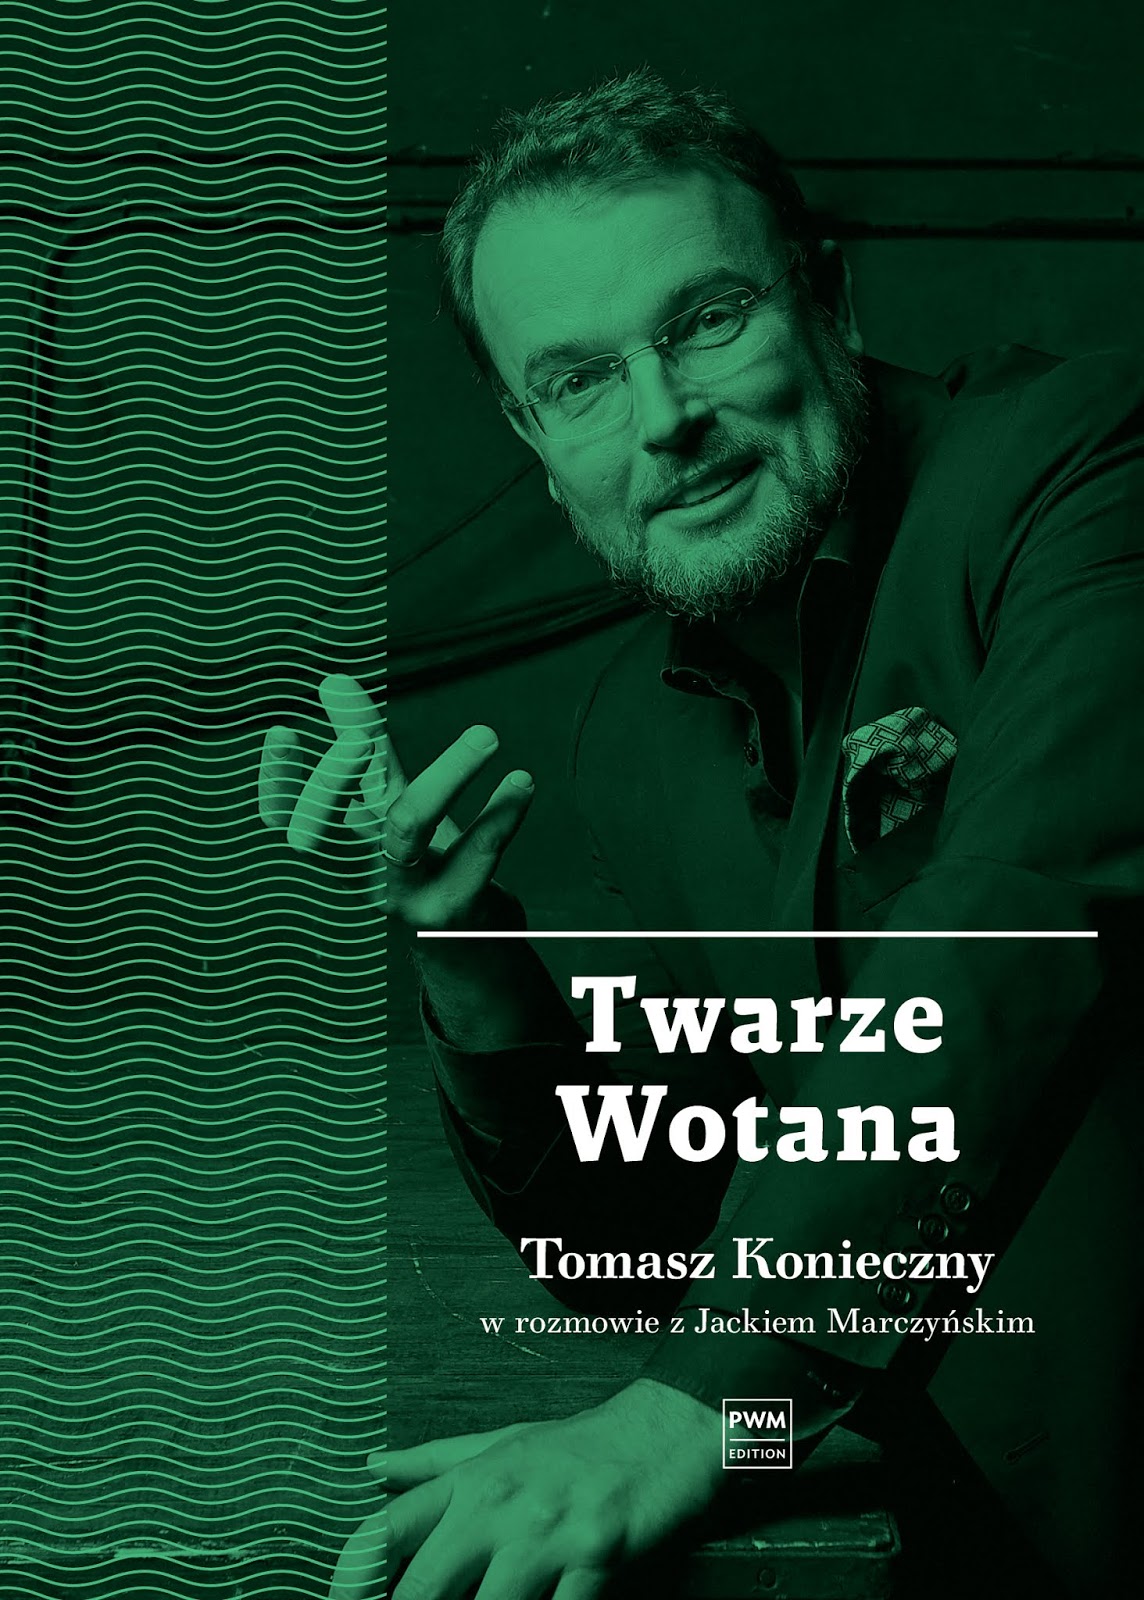 Twarze Wotana - nowa publikacja PWM